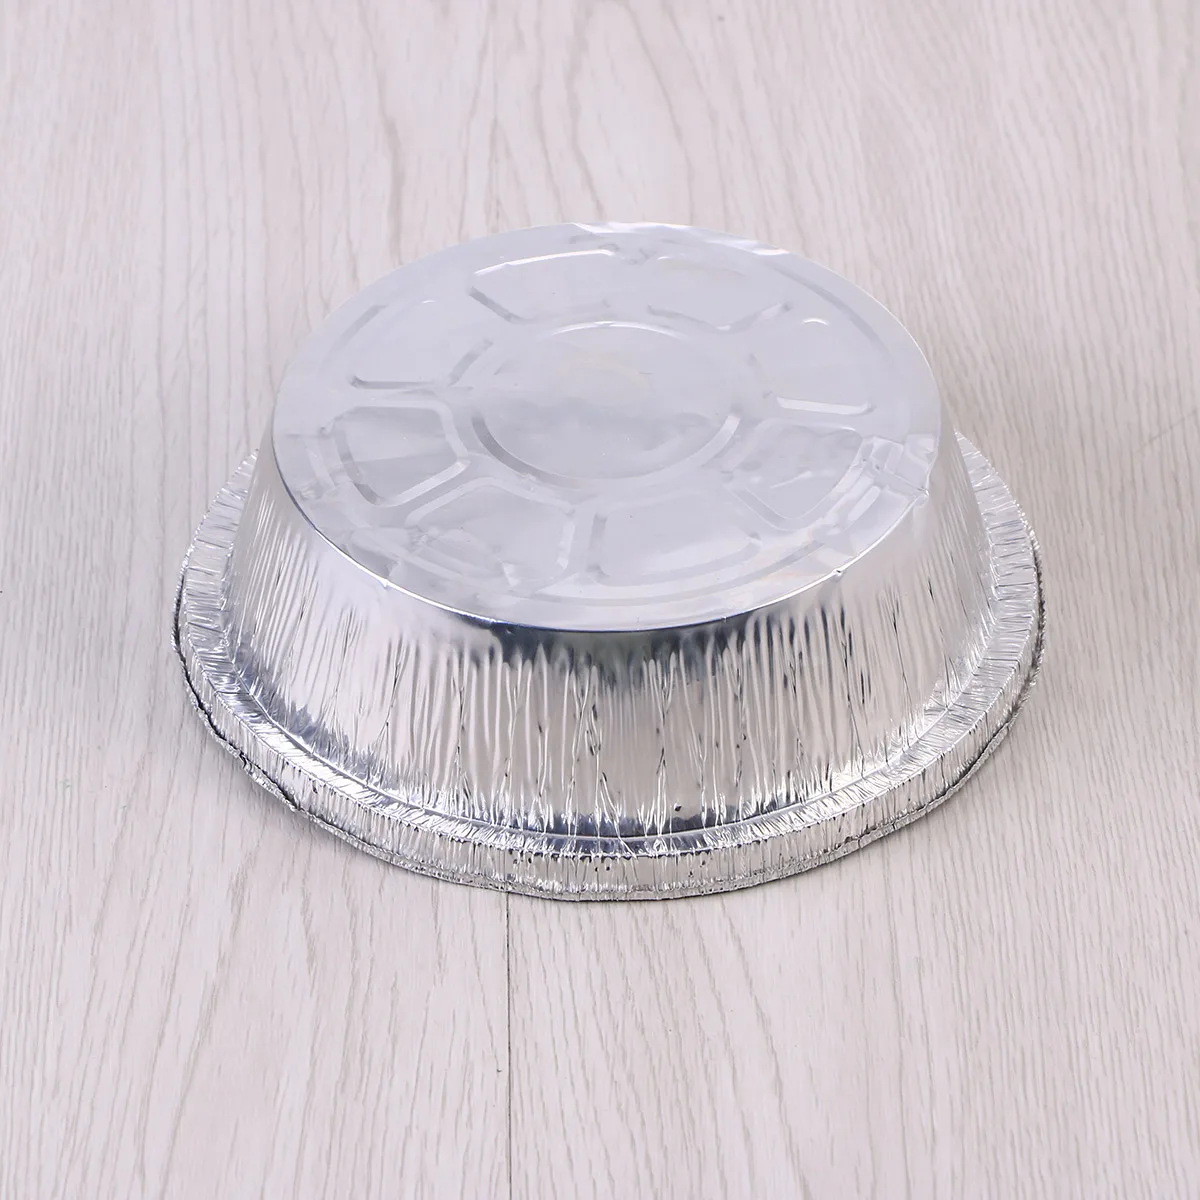 10 шт 6 дюймов круглой формы одноразовая прочная форма из алюминиевой фольги вынимает сковородки идеально подходит для приготовления пищи, Пирогов, тортов, мяса(без крышек